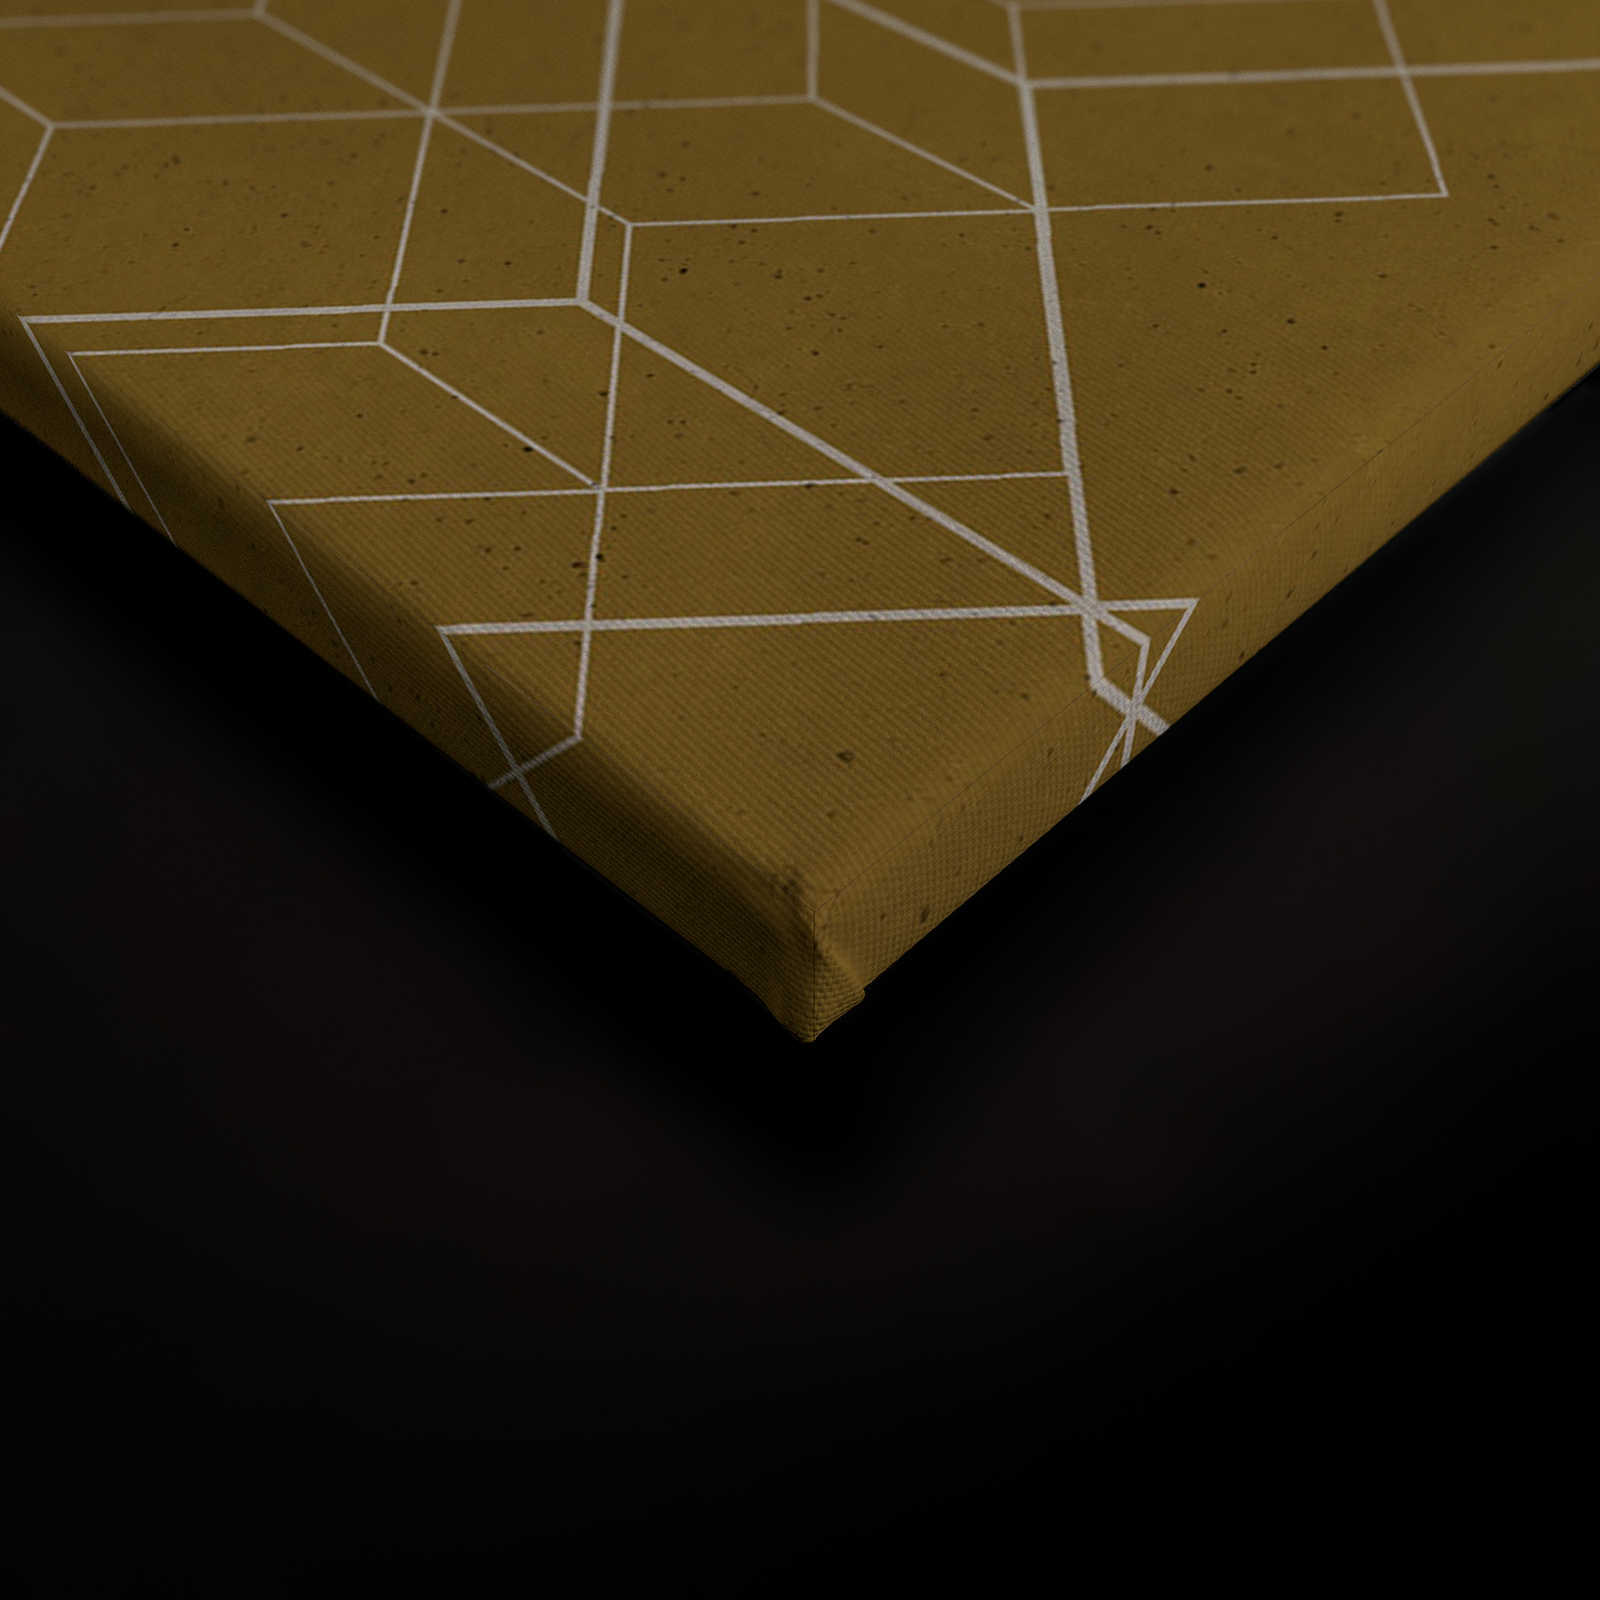             Toile motif géométrique - 0,90 m x 0,60 m
        